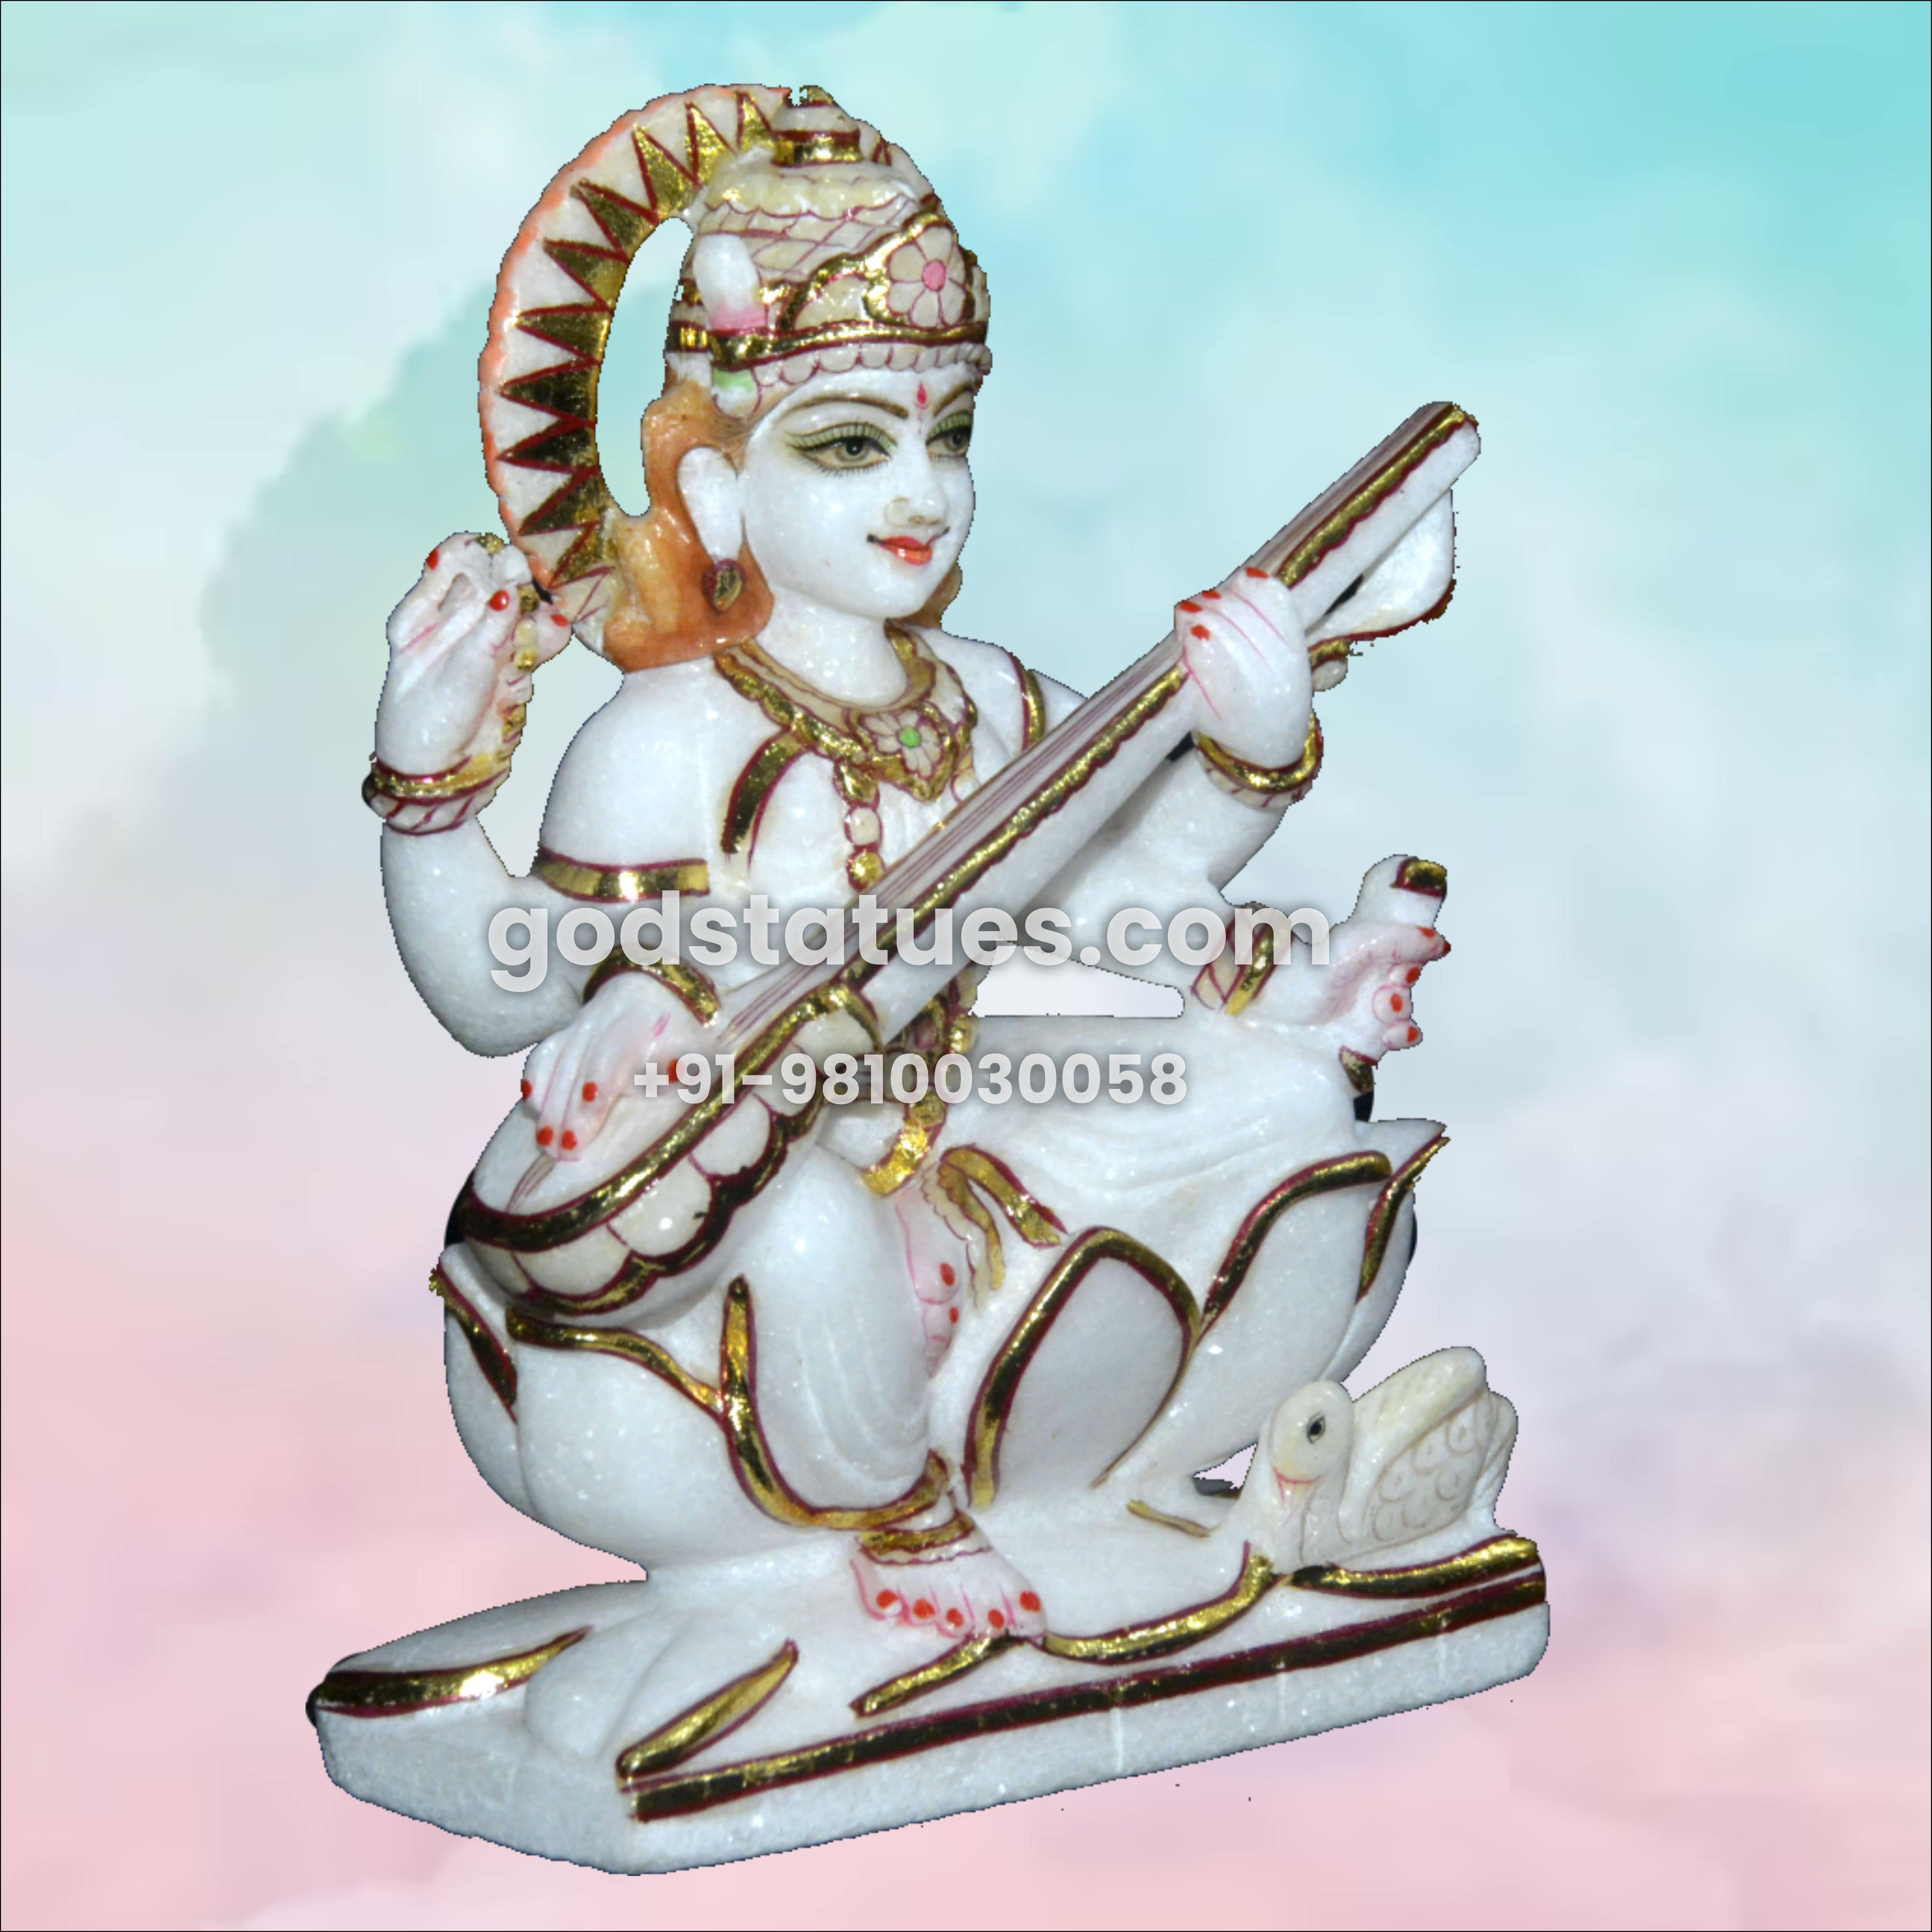 Saraswati Maa sitting on a Lotus Marble Statue God Statues 1